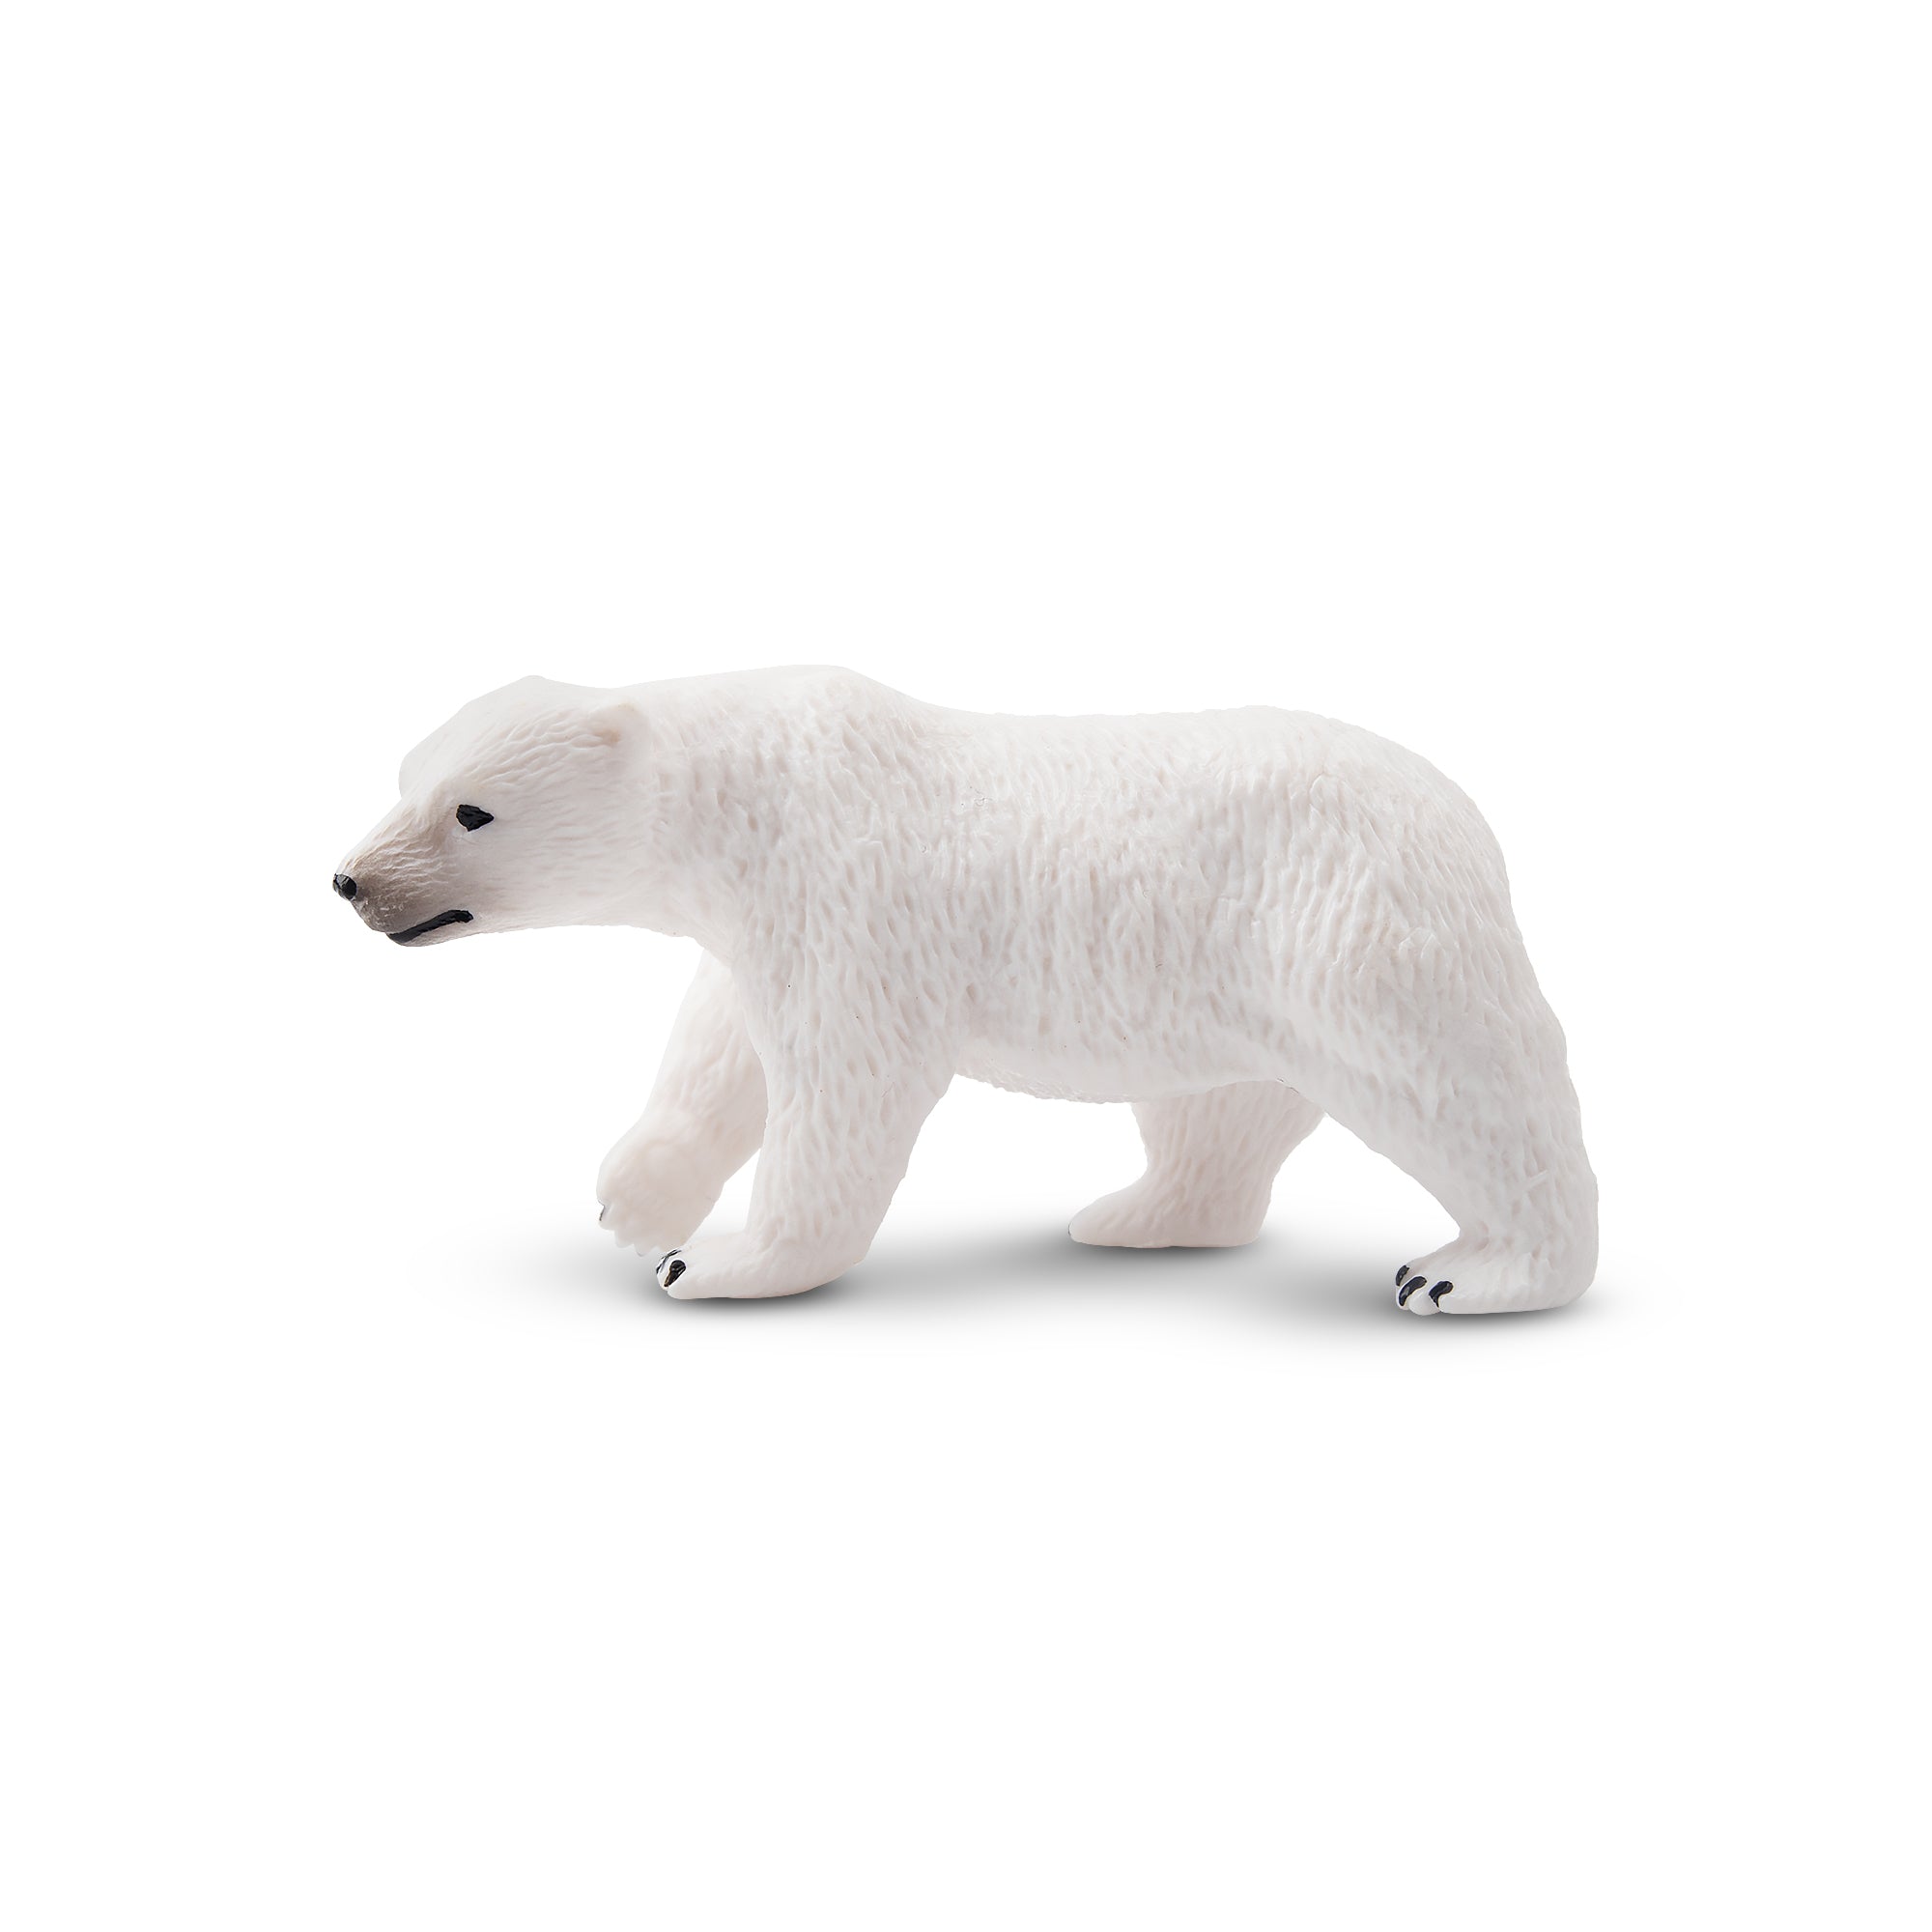 Toymany Walking Polar Bear Figurine Toy